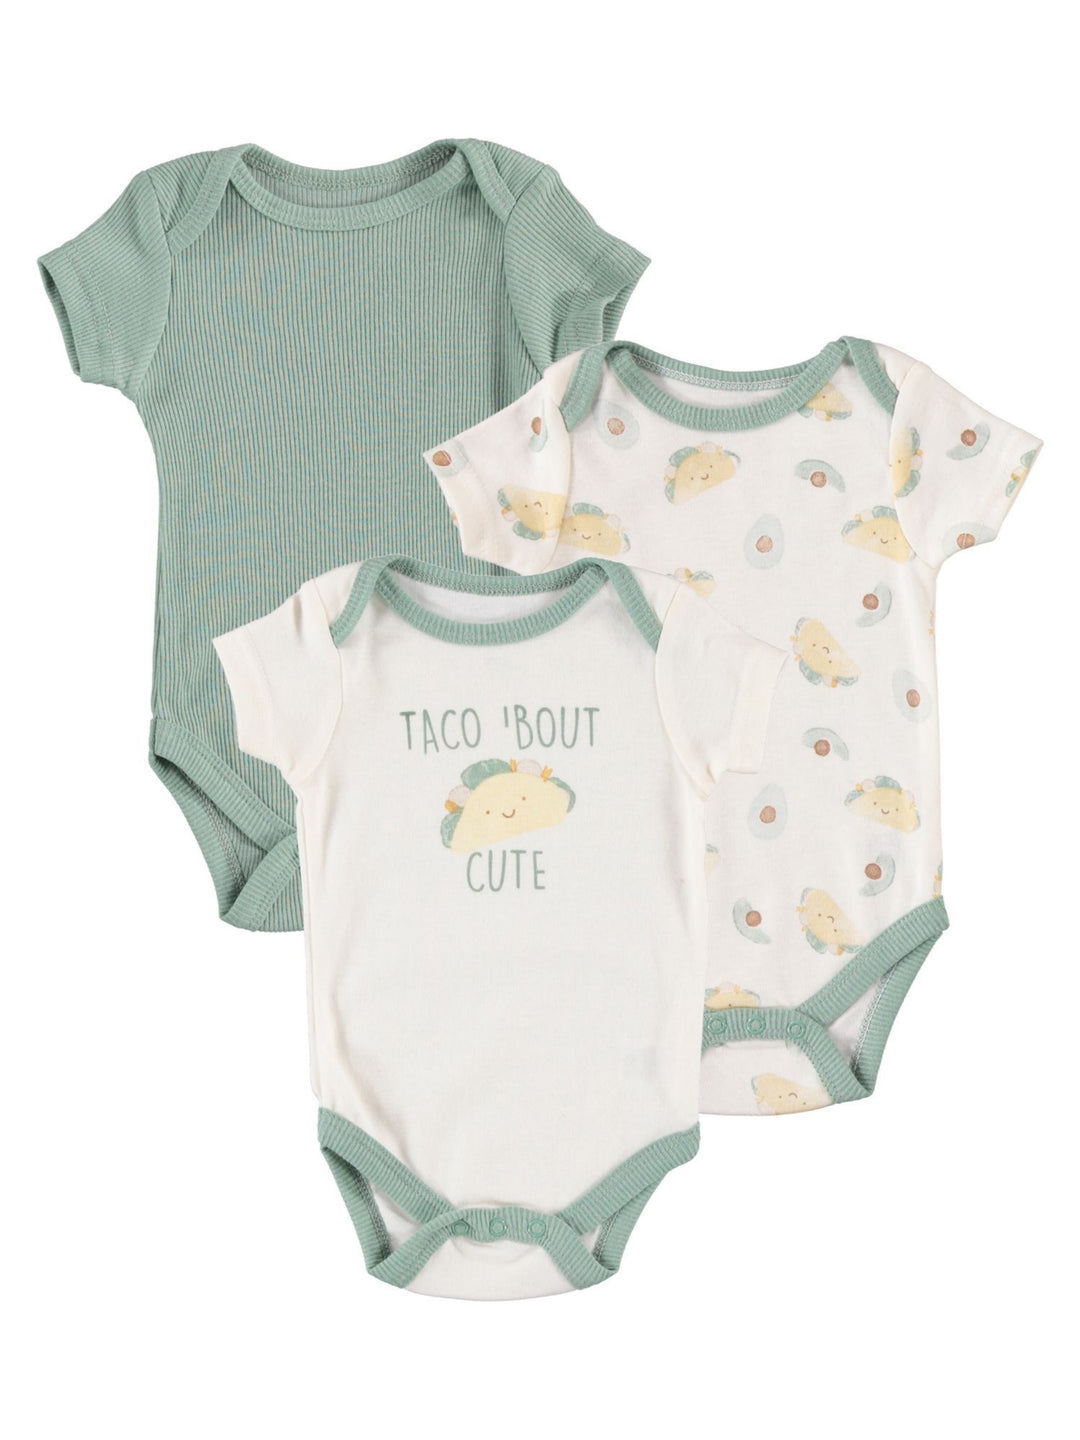 Baby-Boy-Newborn-Essentials-Onesie-Bodysuit-Clothes-Baby-Registry-Shower-Gift-Image1